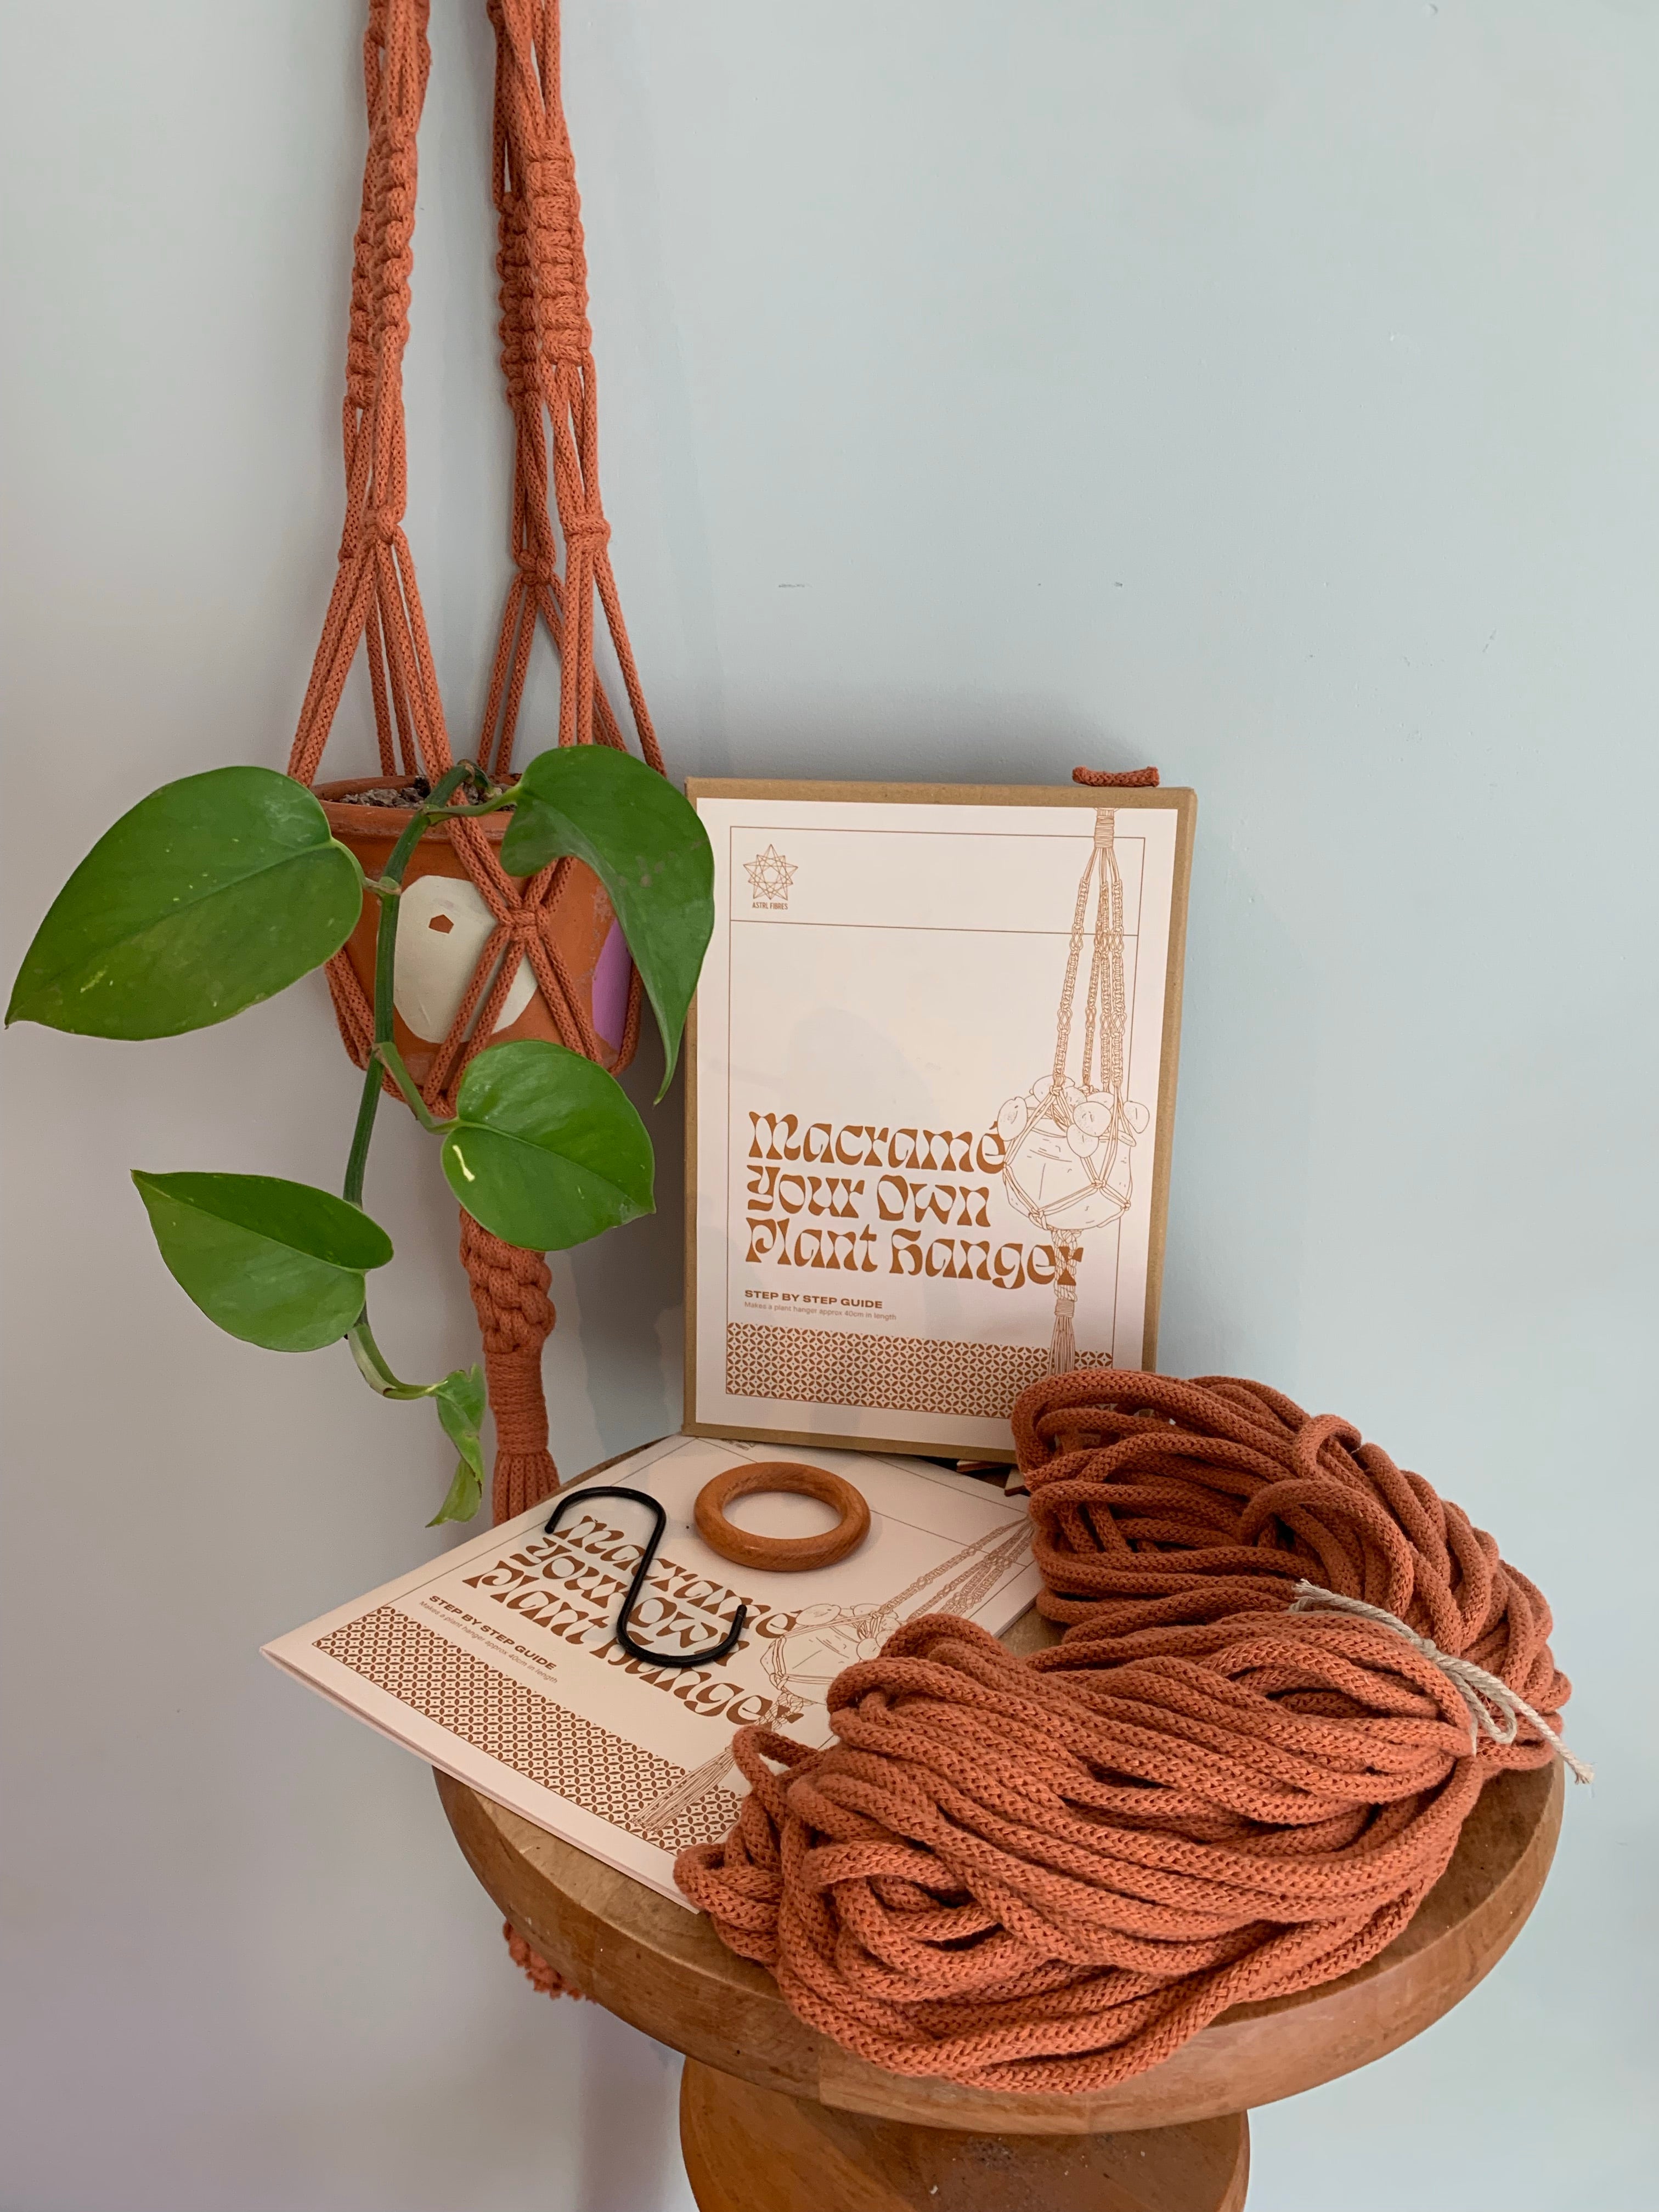 Pepperell Designer Macrame Plant Hanger Kit